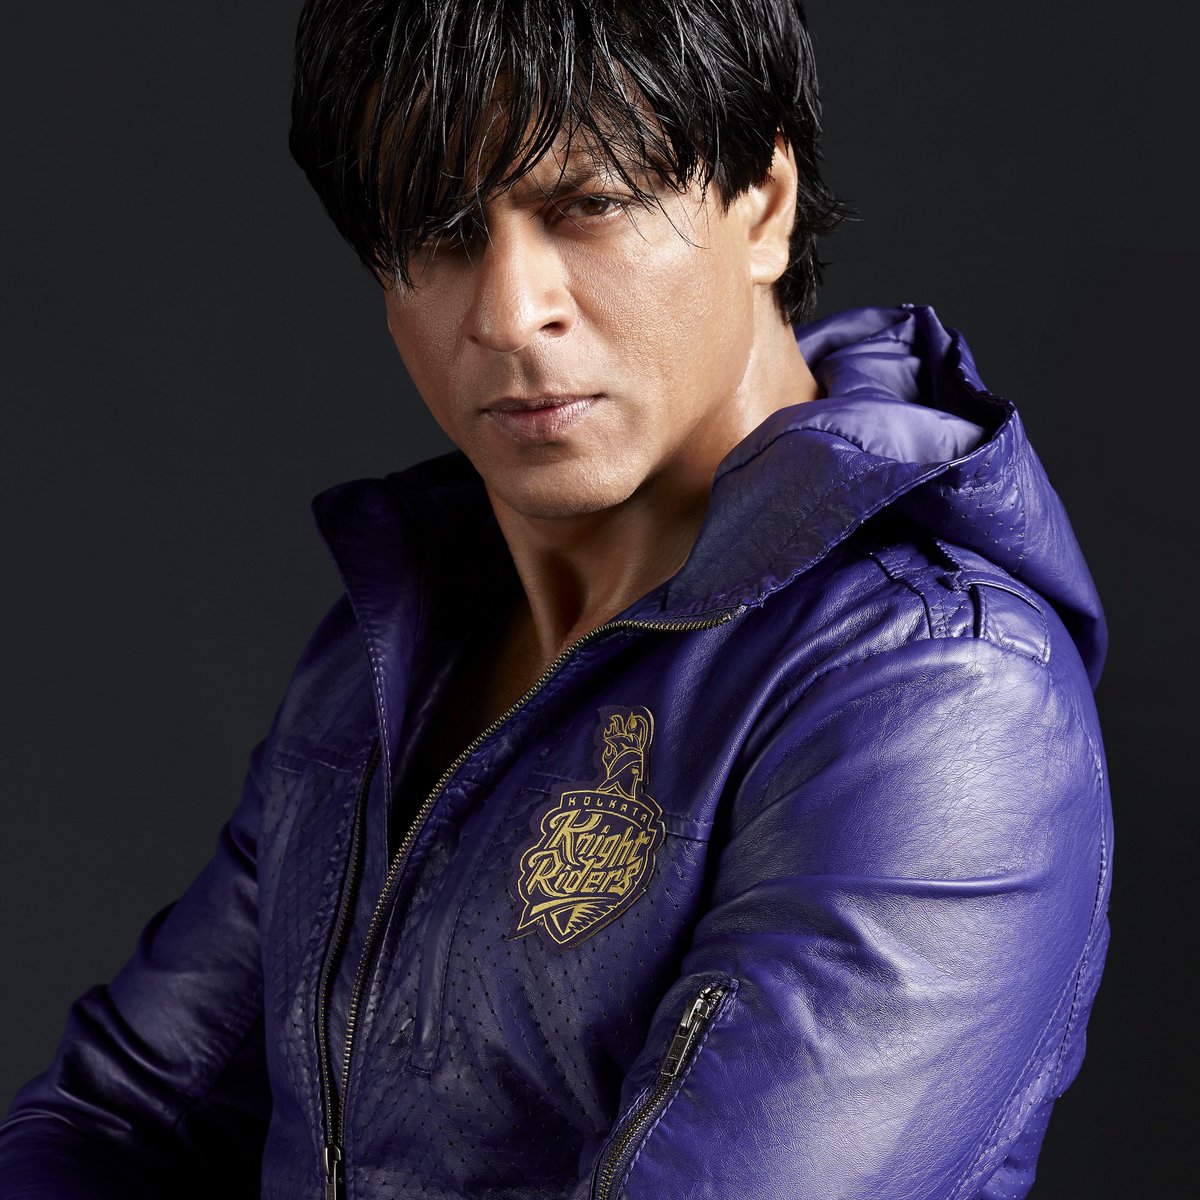 SRK: Playing every role with a winning spirit. 🏆🌟 @iamsrk 📸 @DabbooRatnani @ManishaDRatnani @Dabboo #srk #shahrukhkhan #dabbooratnani #dabbooratnaniphotography